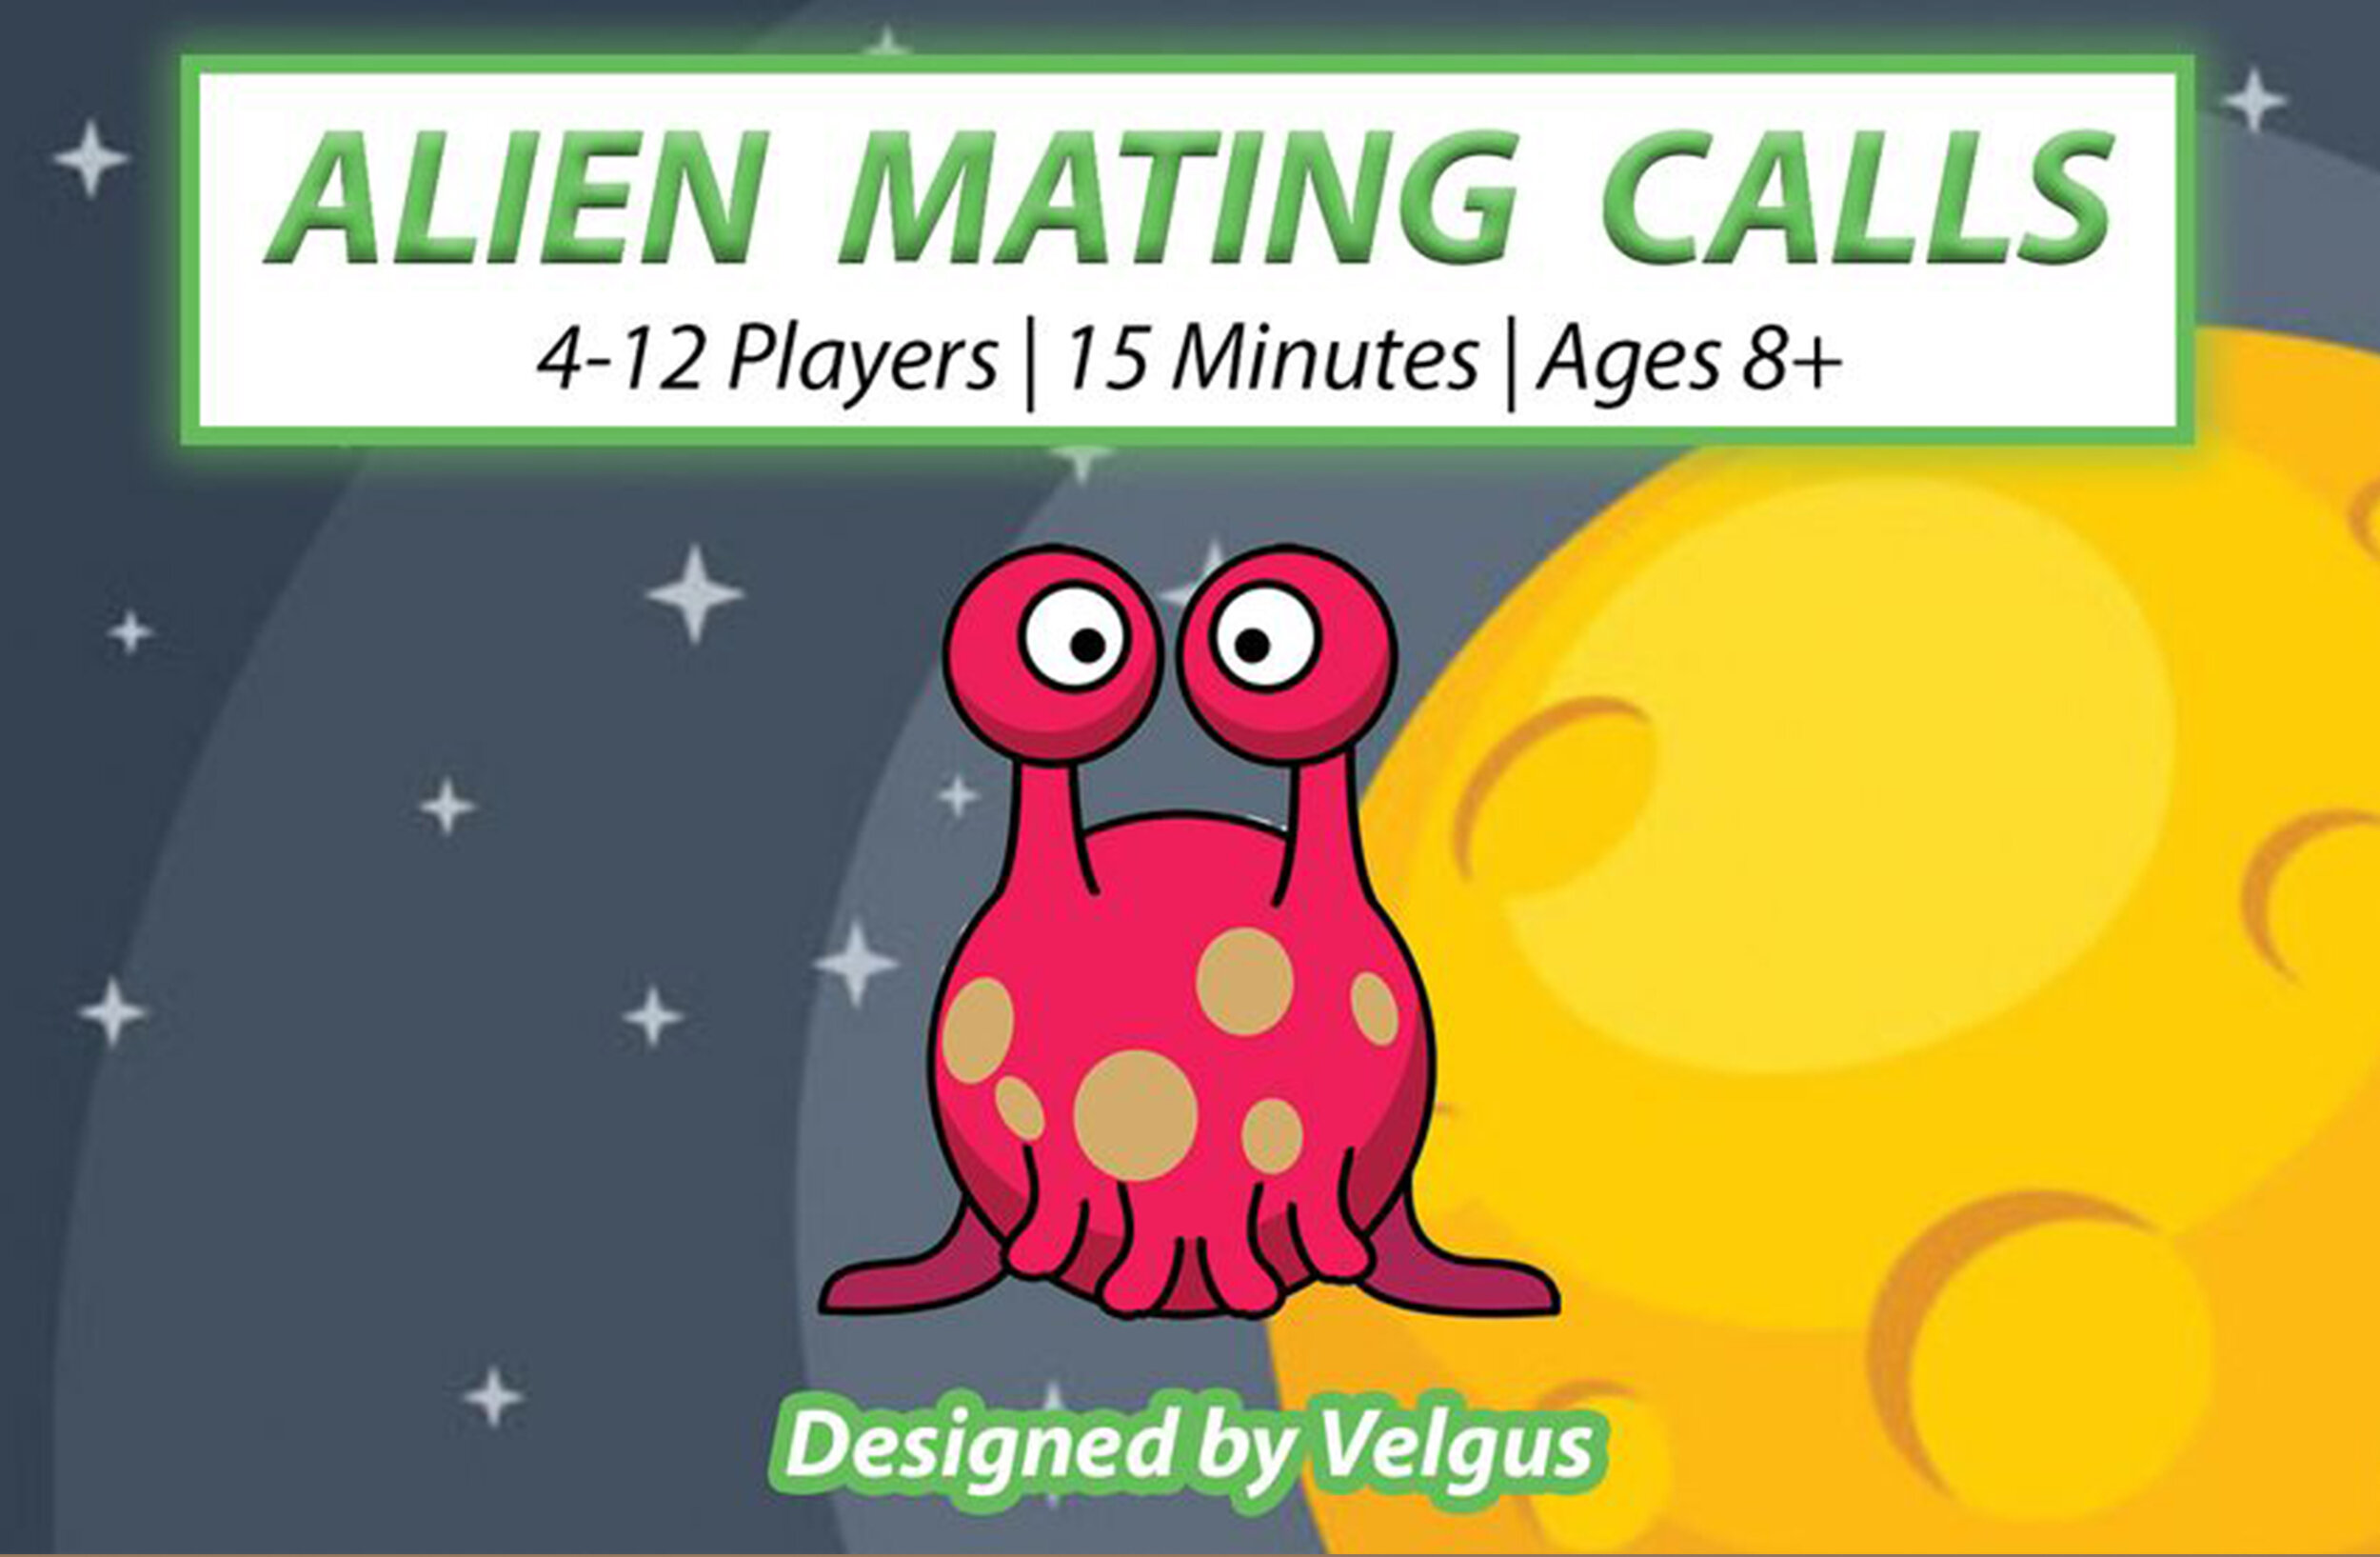 Alien Mating Calls Cover.jpg